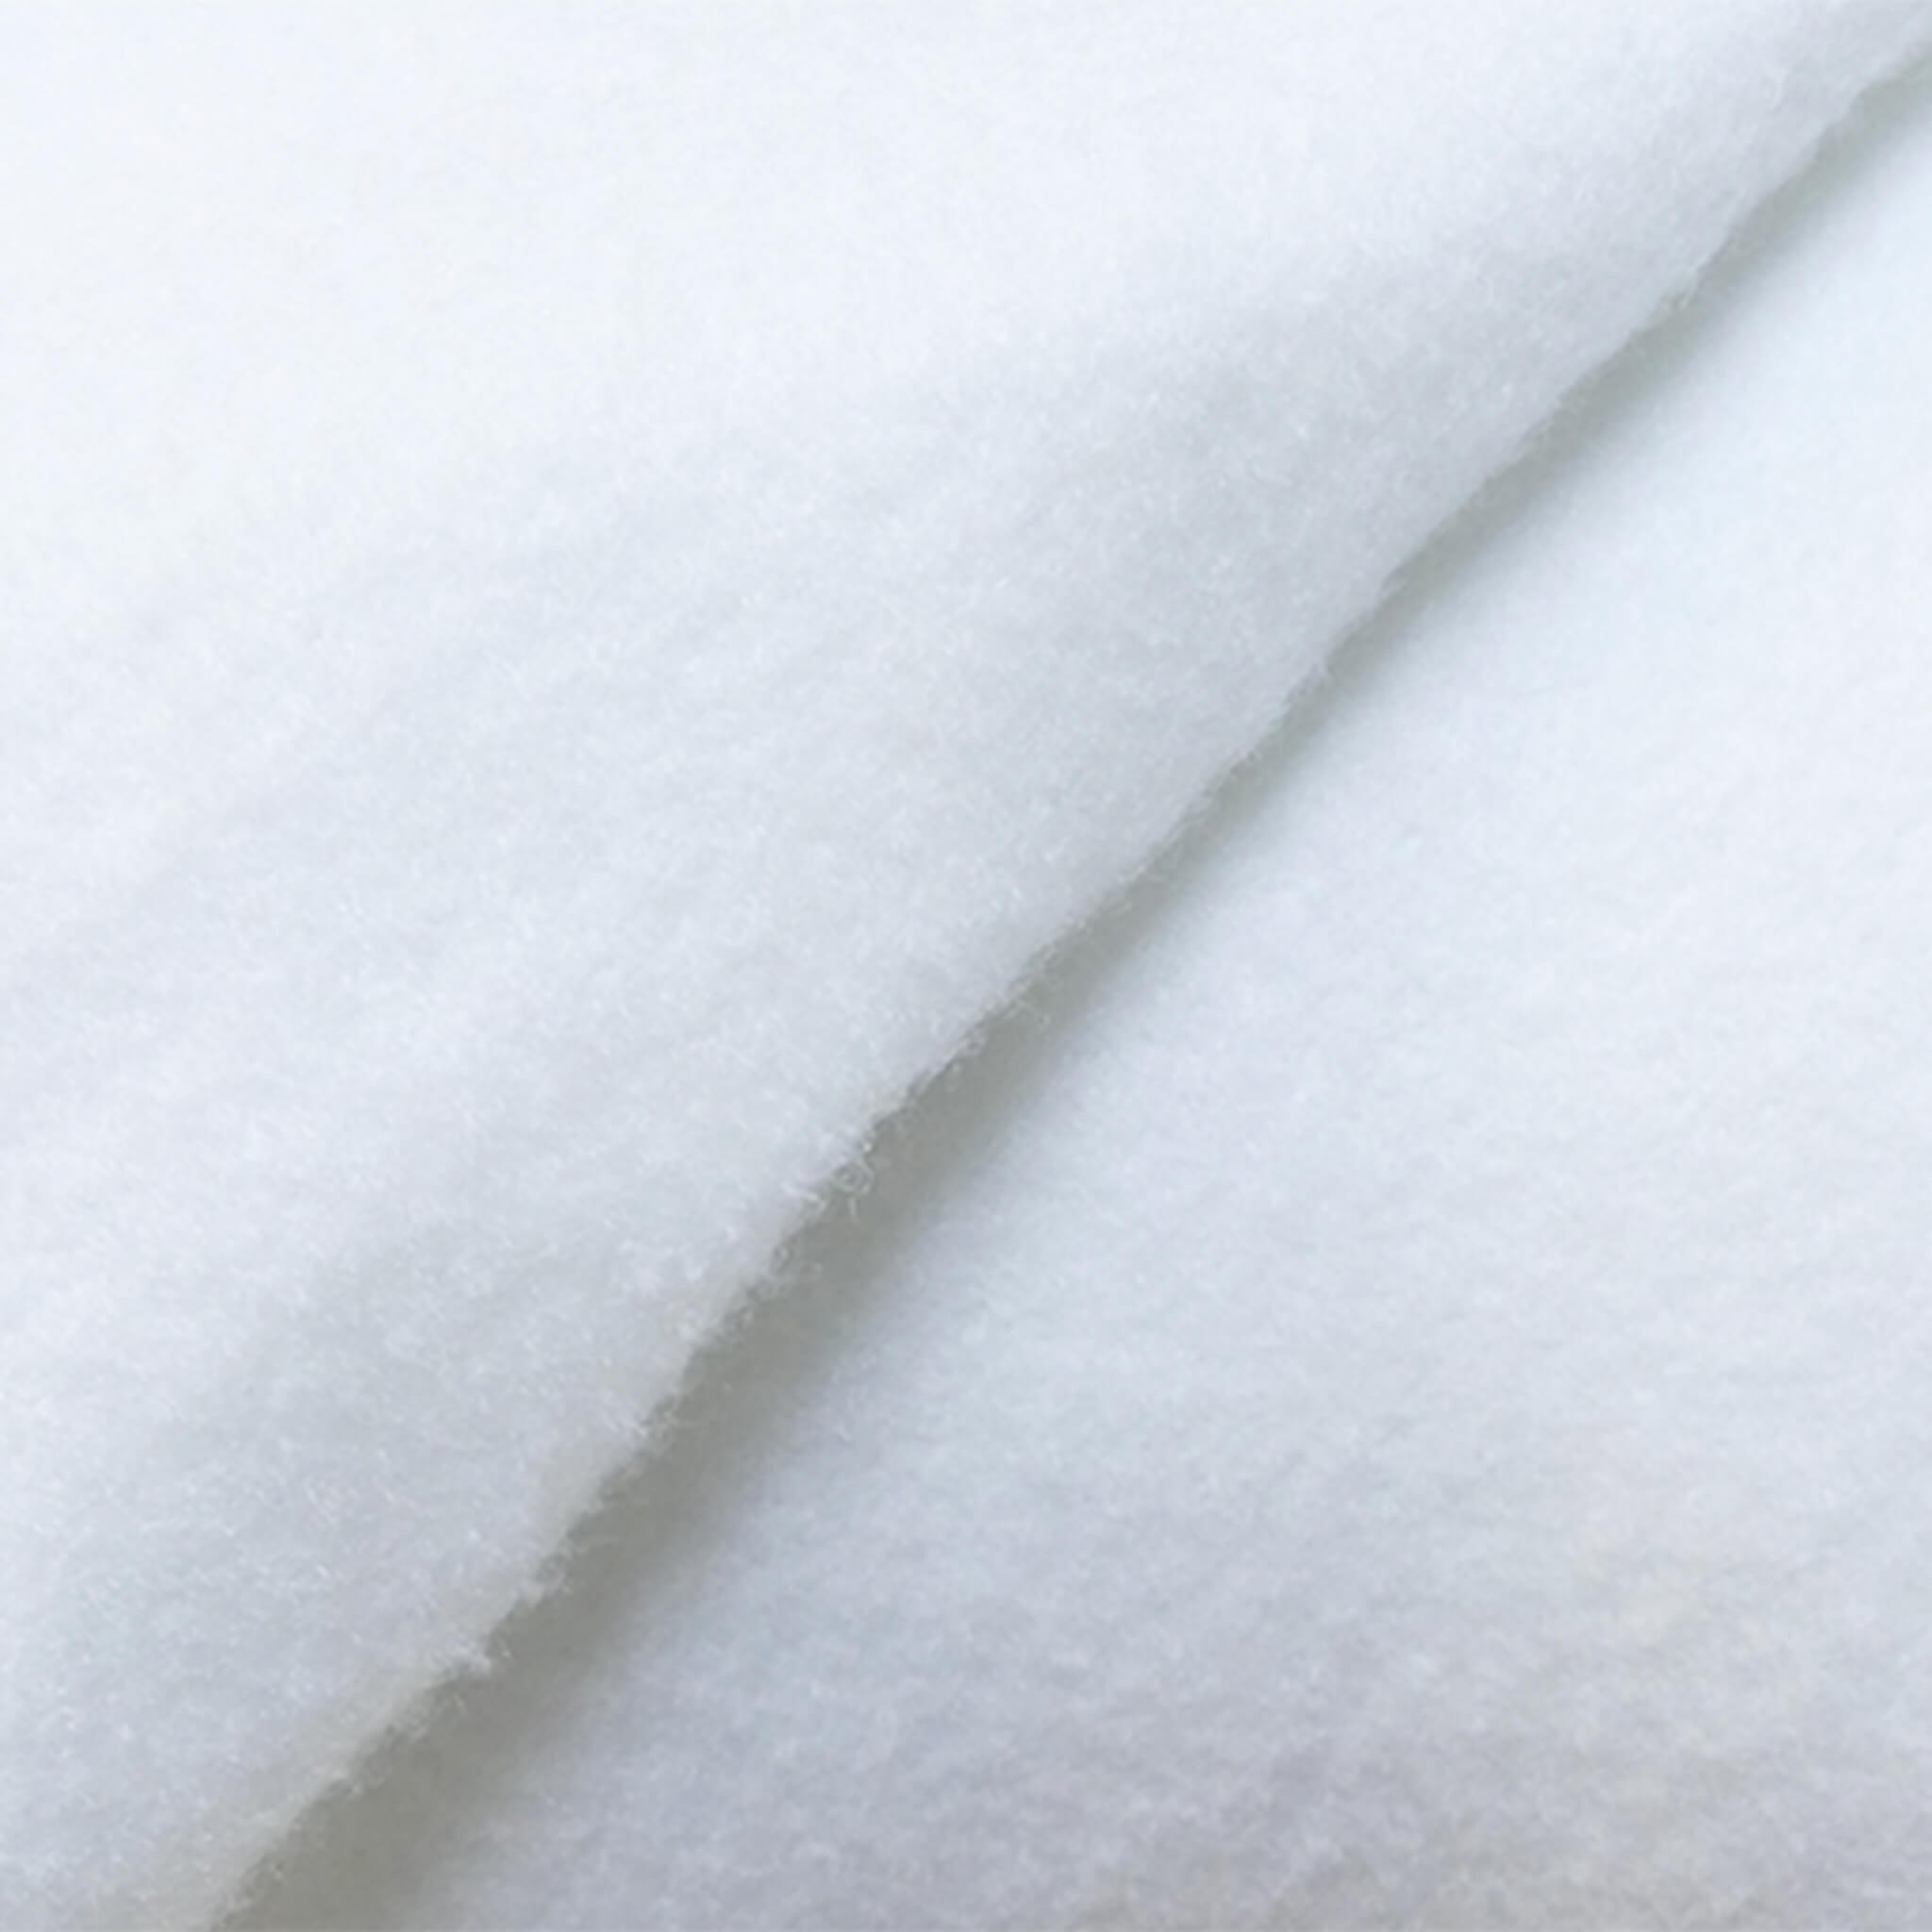 Protège matelas anti-acariens Microstop molleton 100% coton - bonnet 40 cm